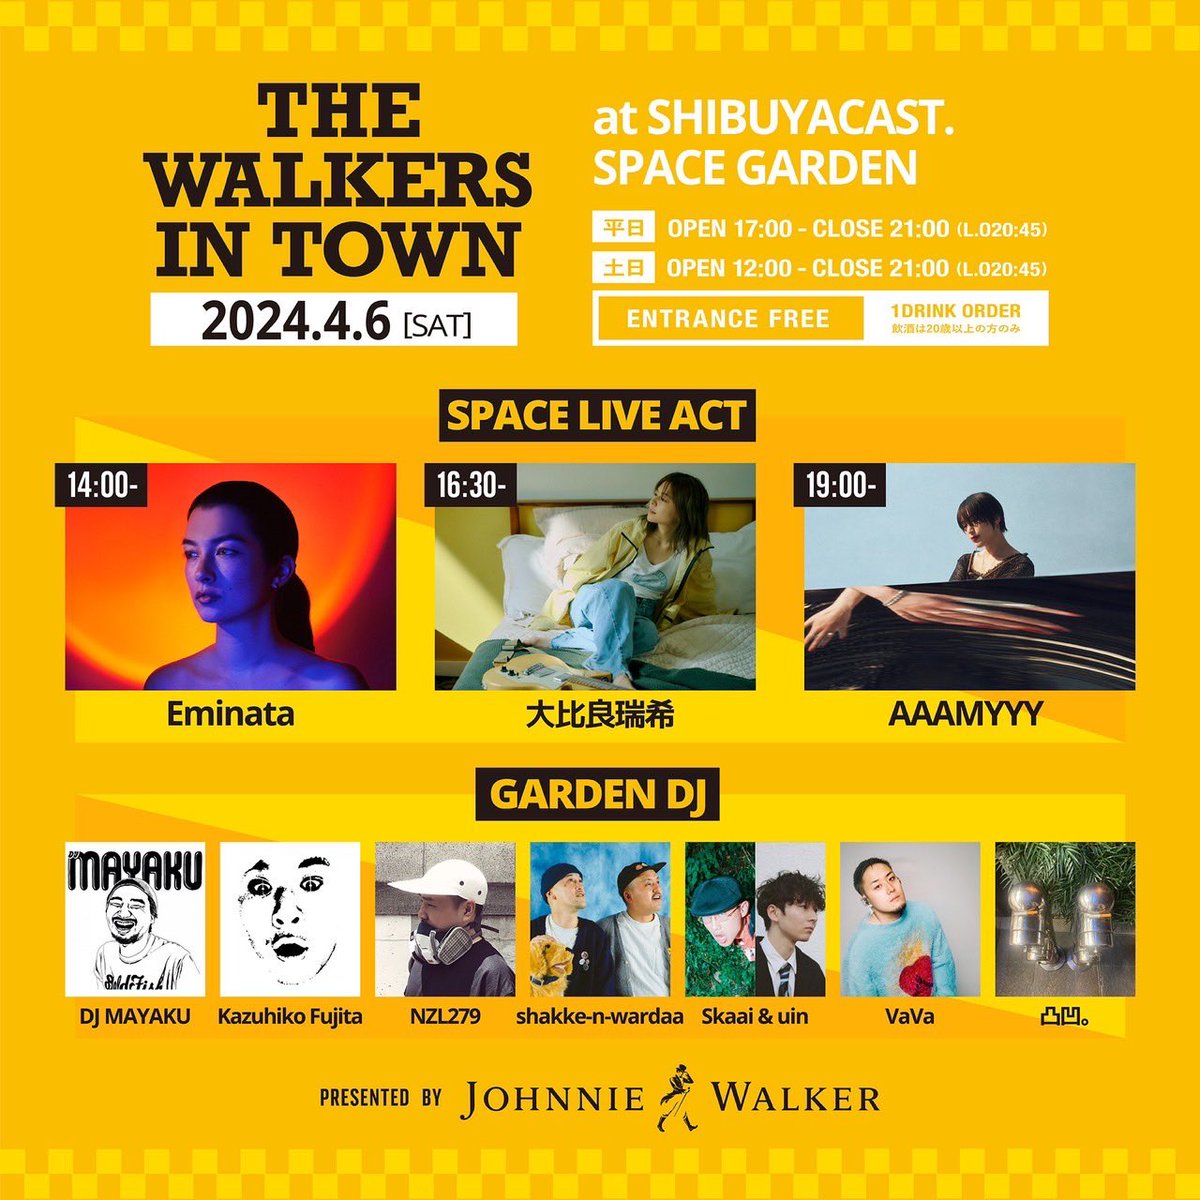 6日(土)に渋谷CAST SPACE GARDENにて開催される「THE WALKERS IN TOWN presented by JOHNNIE WALKER」にDJ出演いたします。 是非ご来場ください。 2024年4月6日(土) 12:00-21:00 at SHIBUYA CAST. SPACE GARDEN 東京都渋谷区渋谷1-23-21 ENTRANCE FREE (with 1Drink Order)